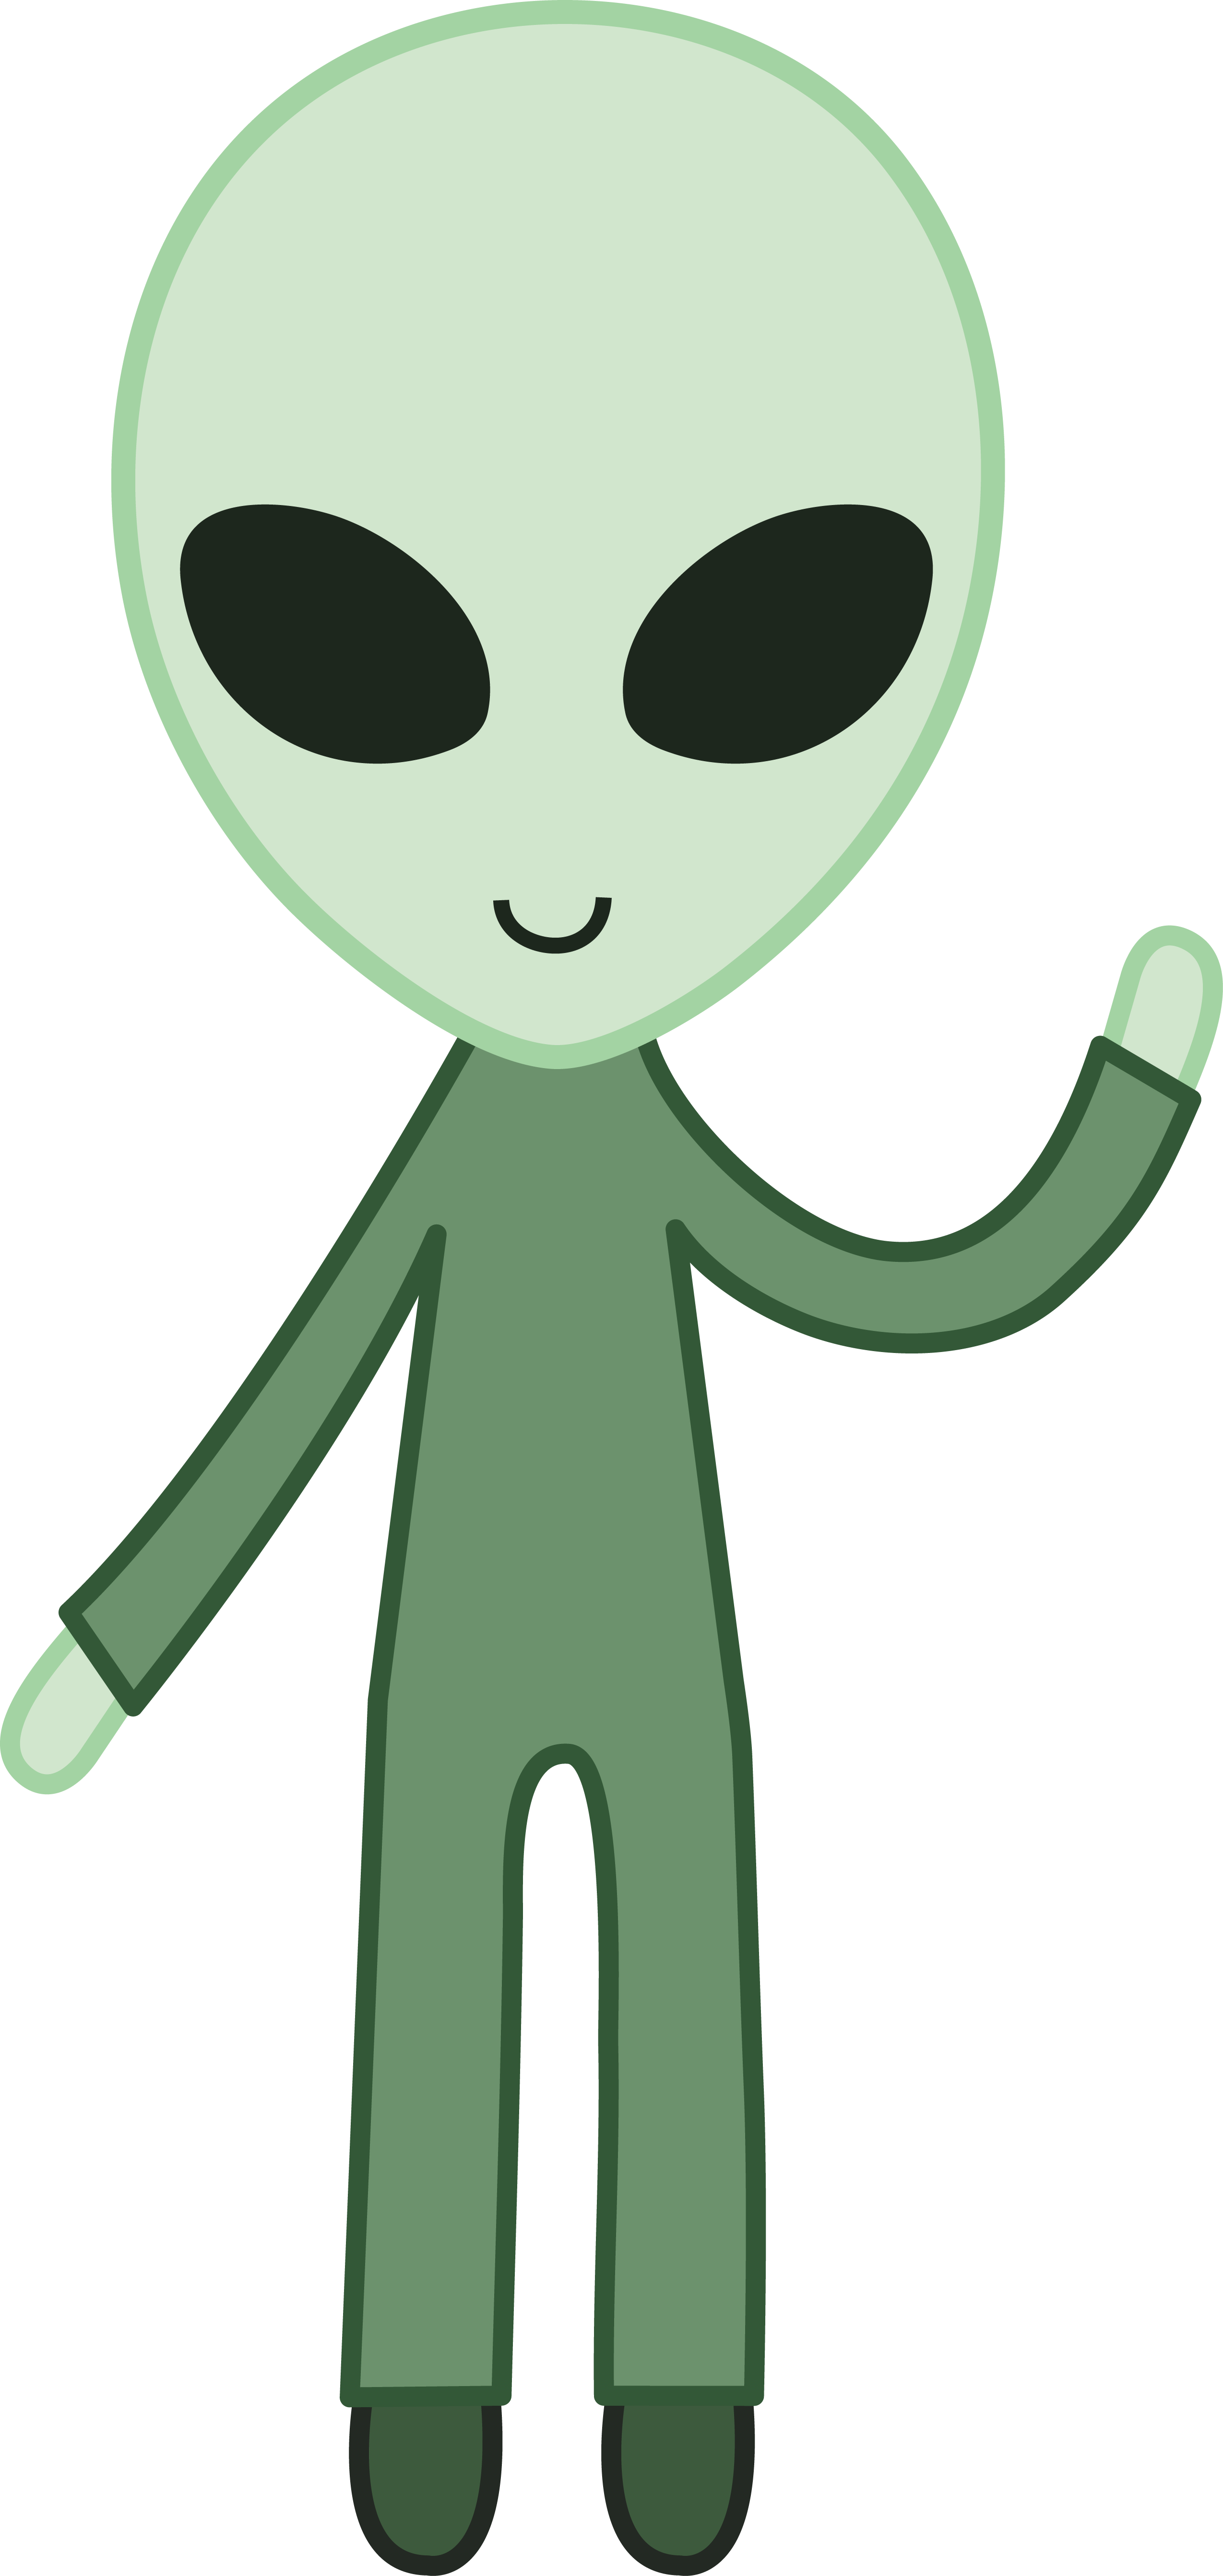 Green space alien free. Ufo clipart friendly